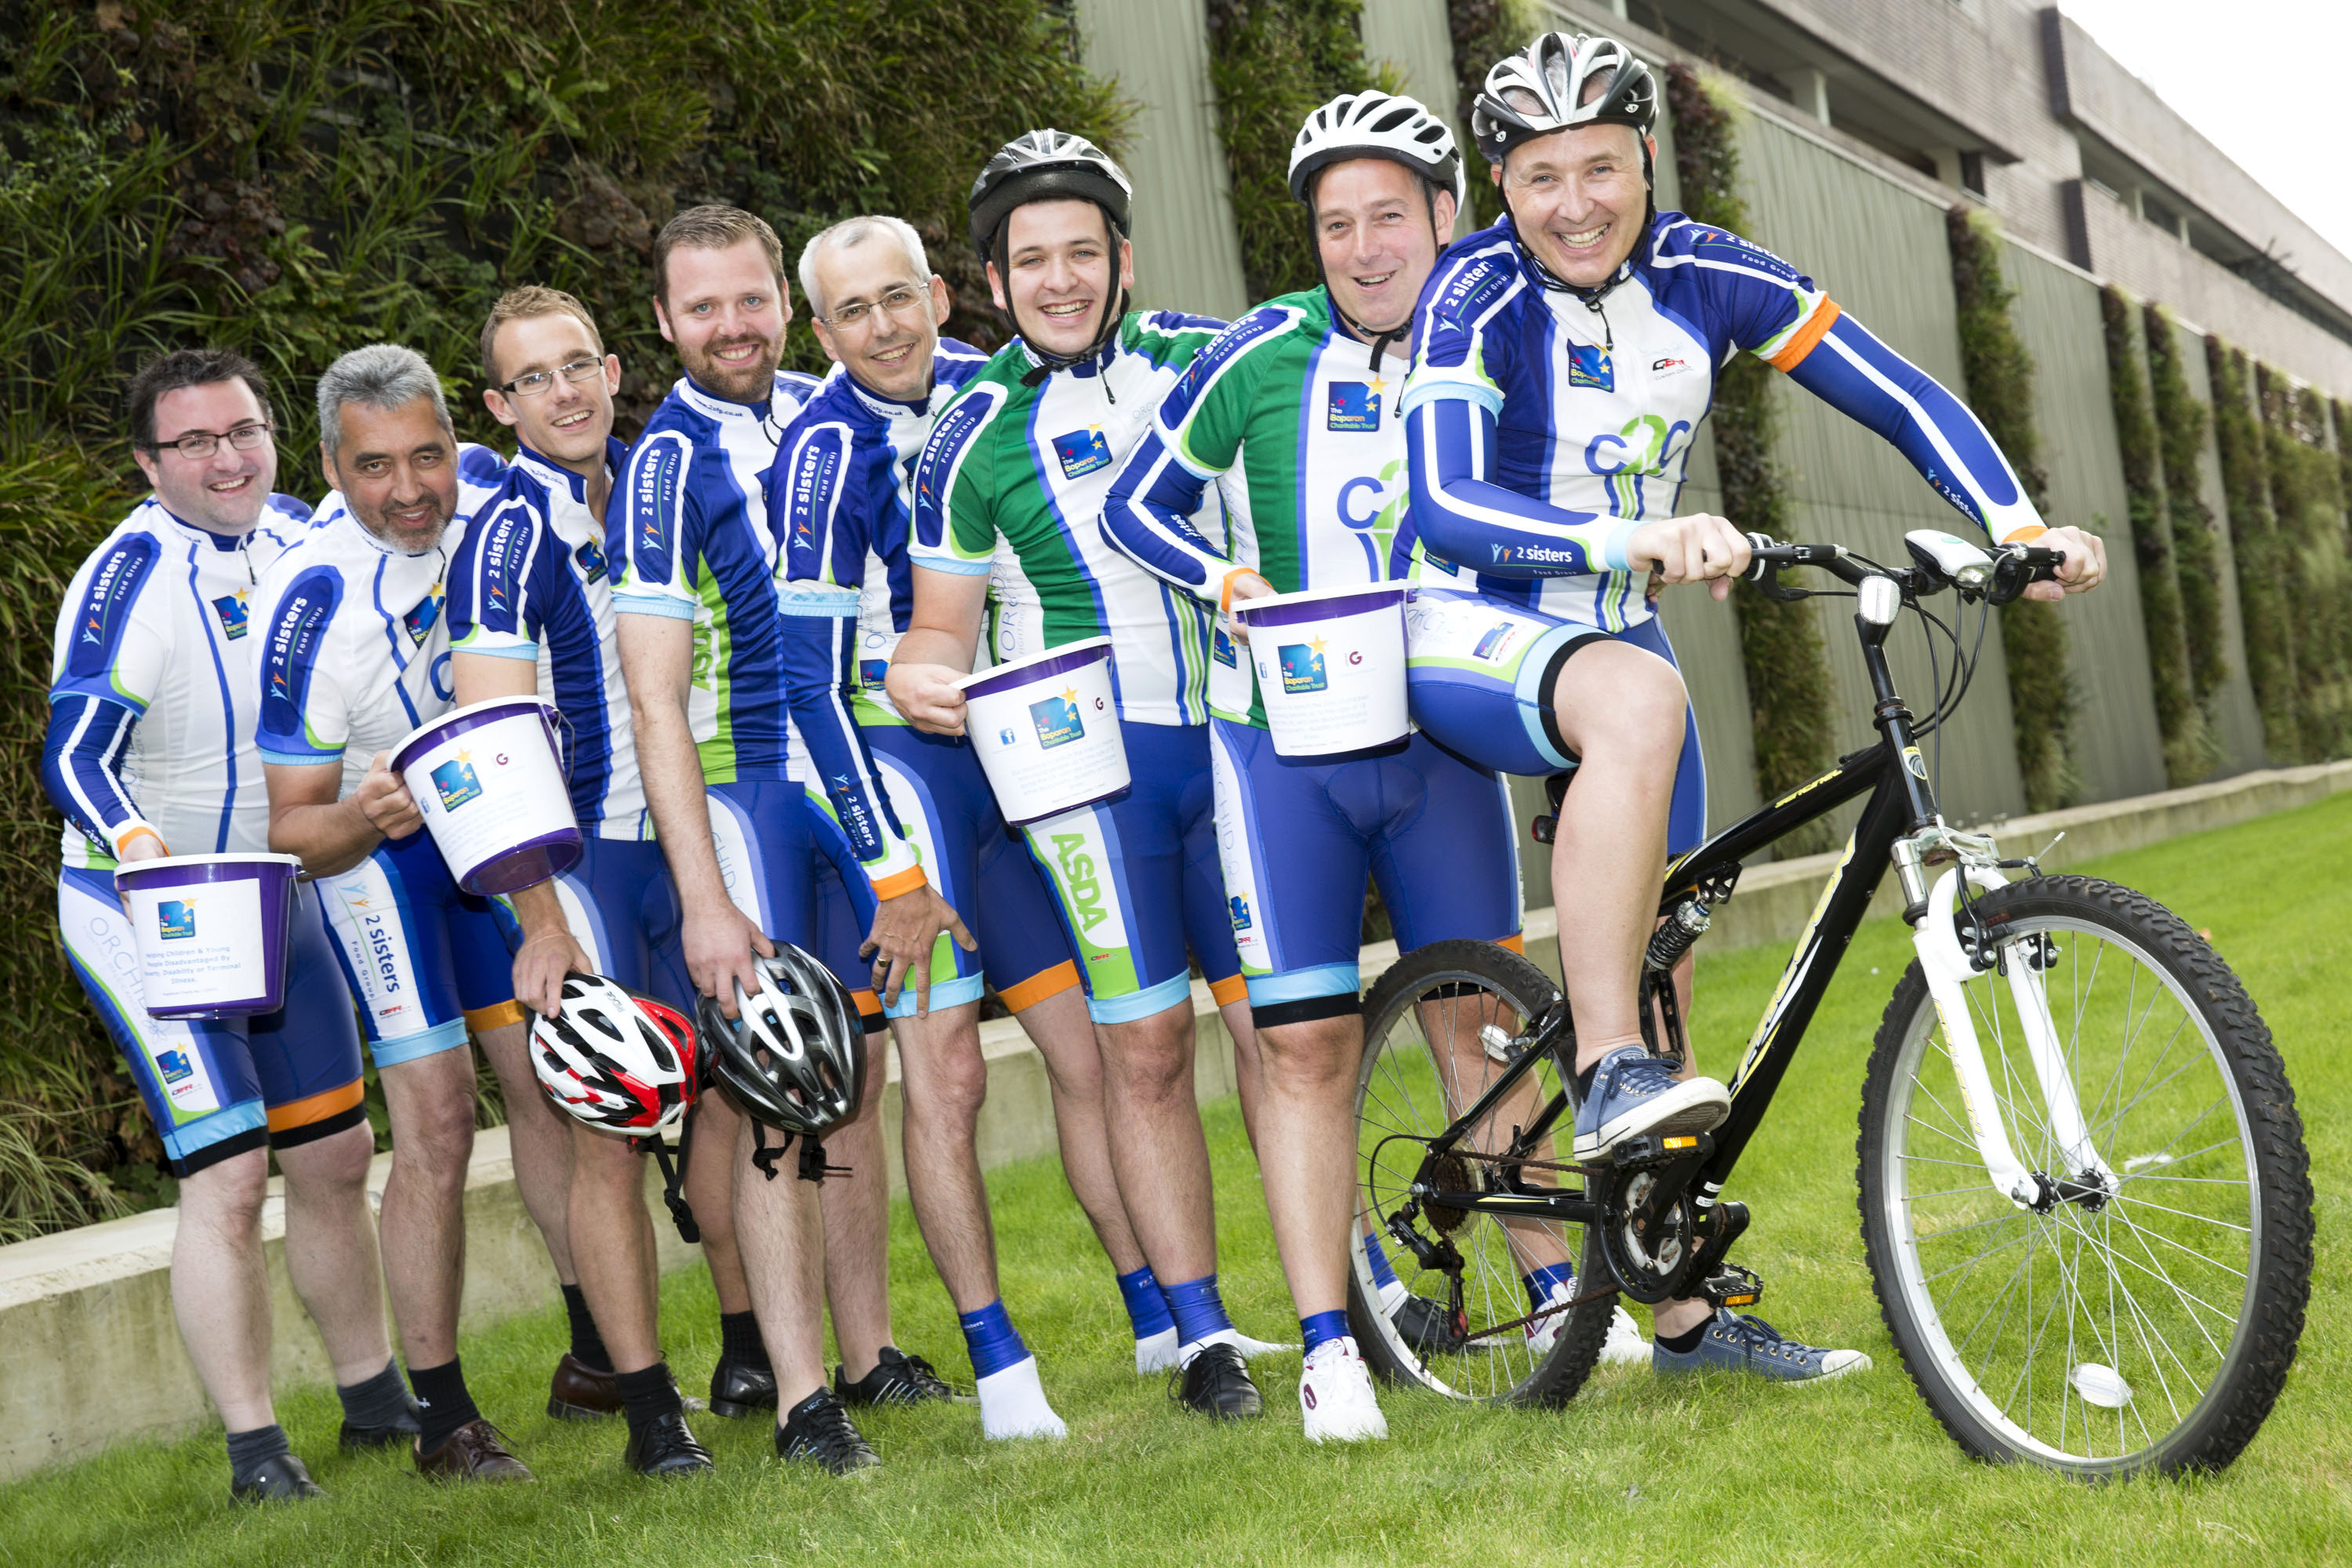 Charity bike ride team